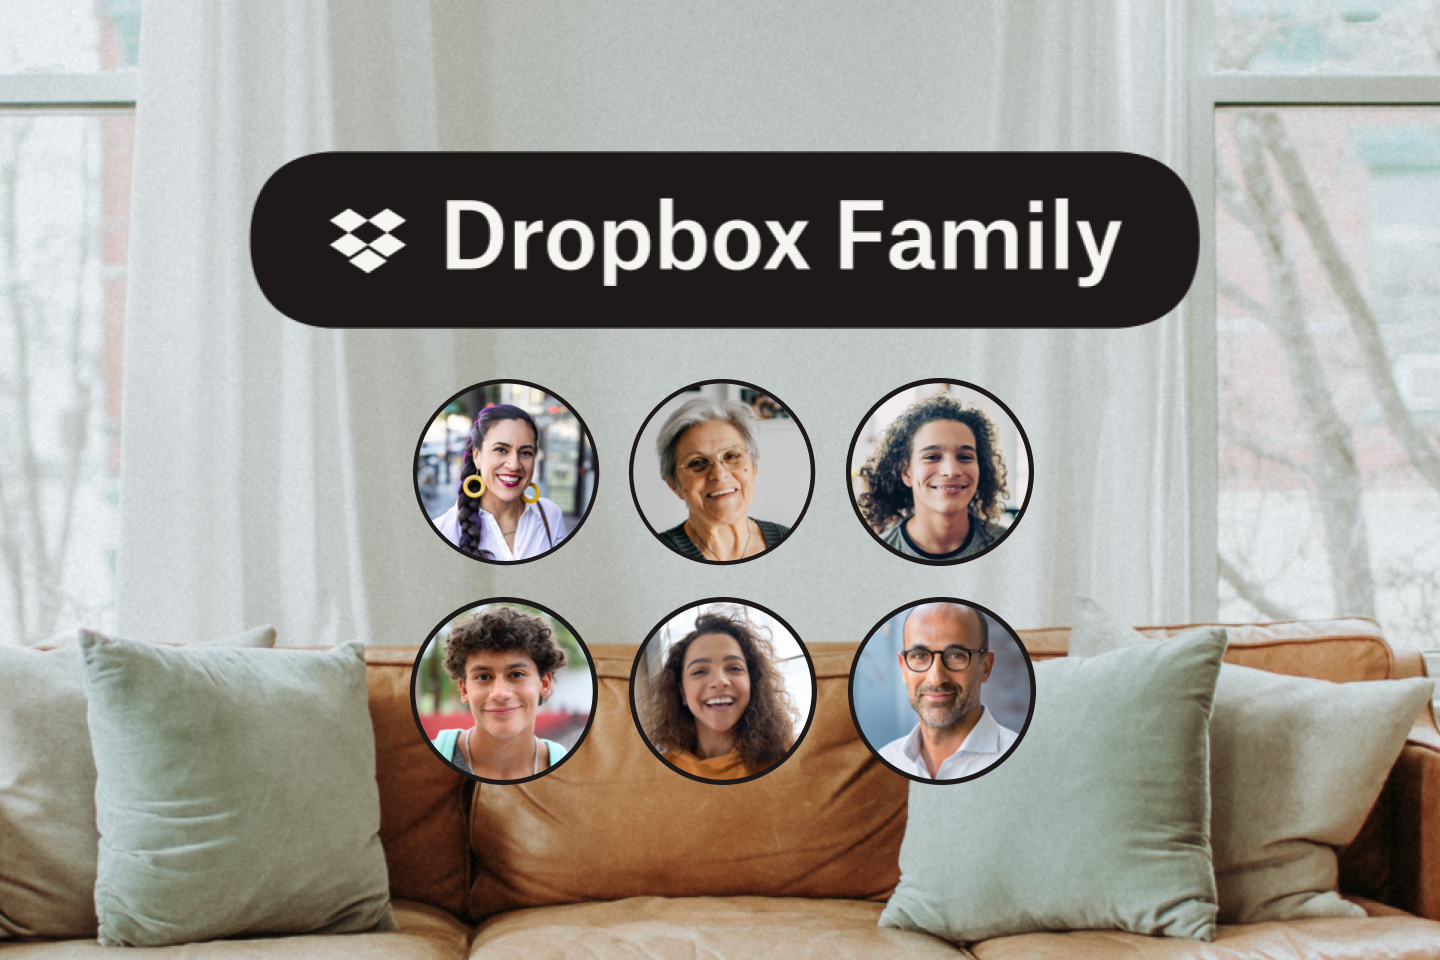 โซฟาหนังที่มีรูปไอคอนครอบครัว 6 คนและโลโก้ Dropbox Family